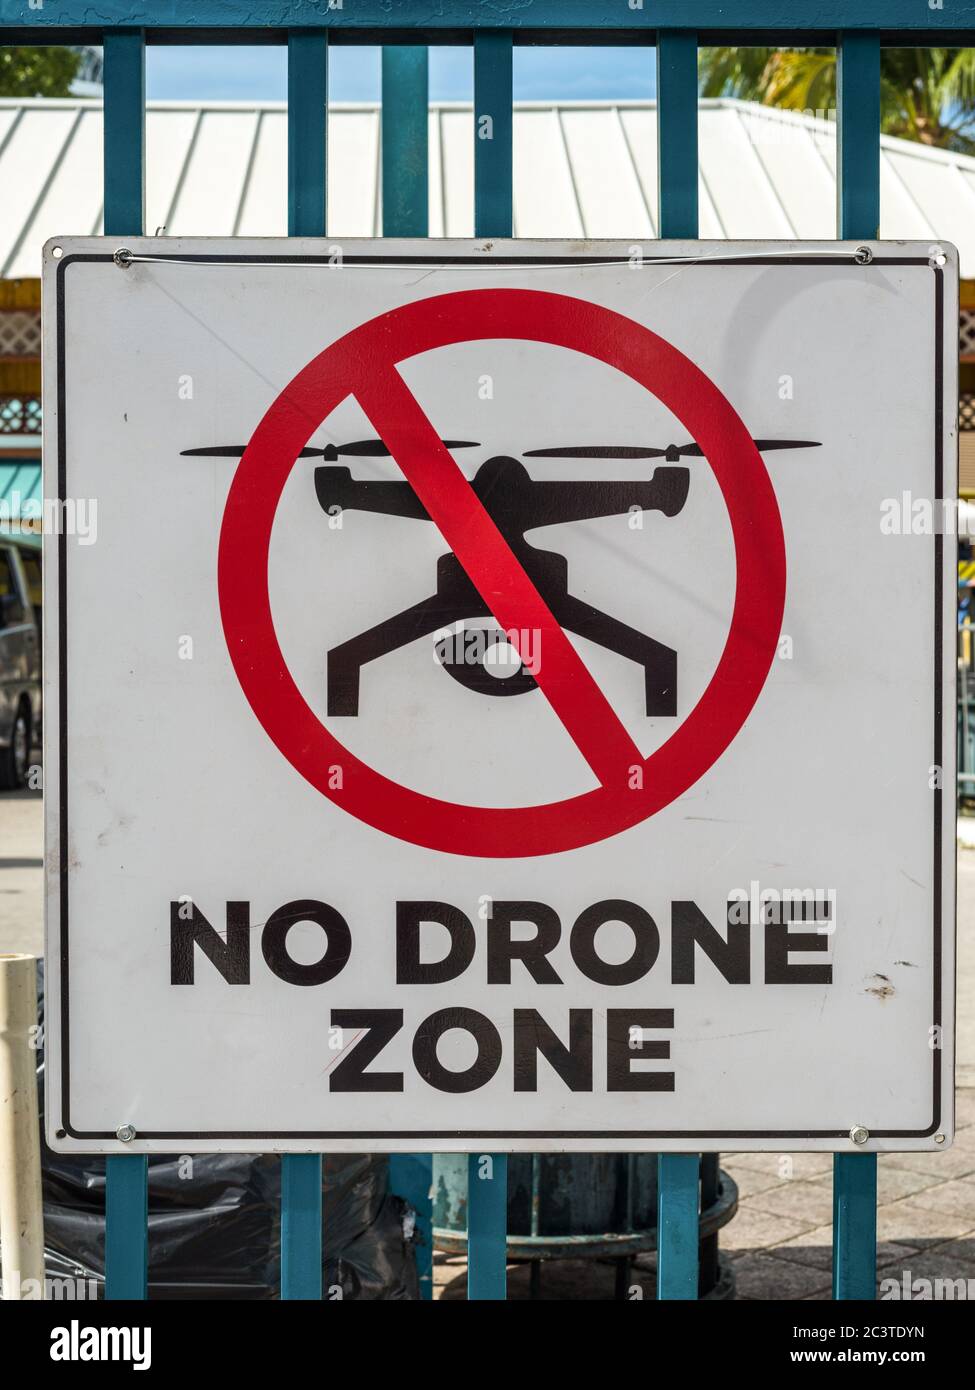 Kein Drone Zone Schild Kreuz Rot Weiß Metall echten Freien touristische Ort Eintrag Warnung Stockfoto